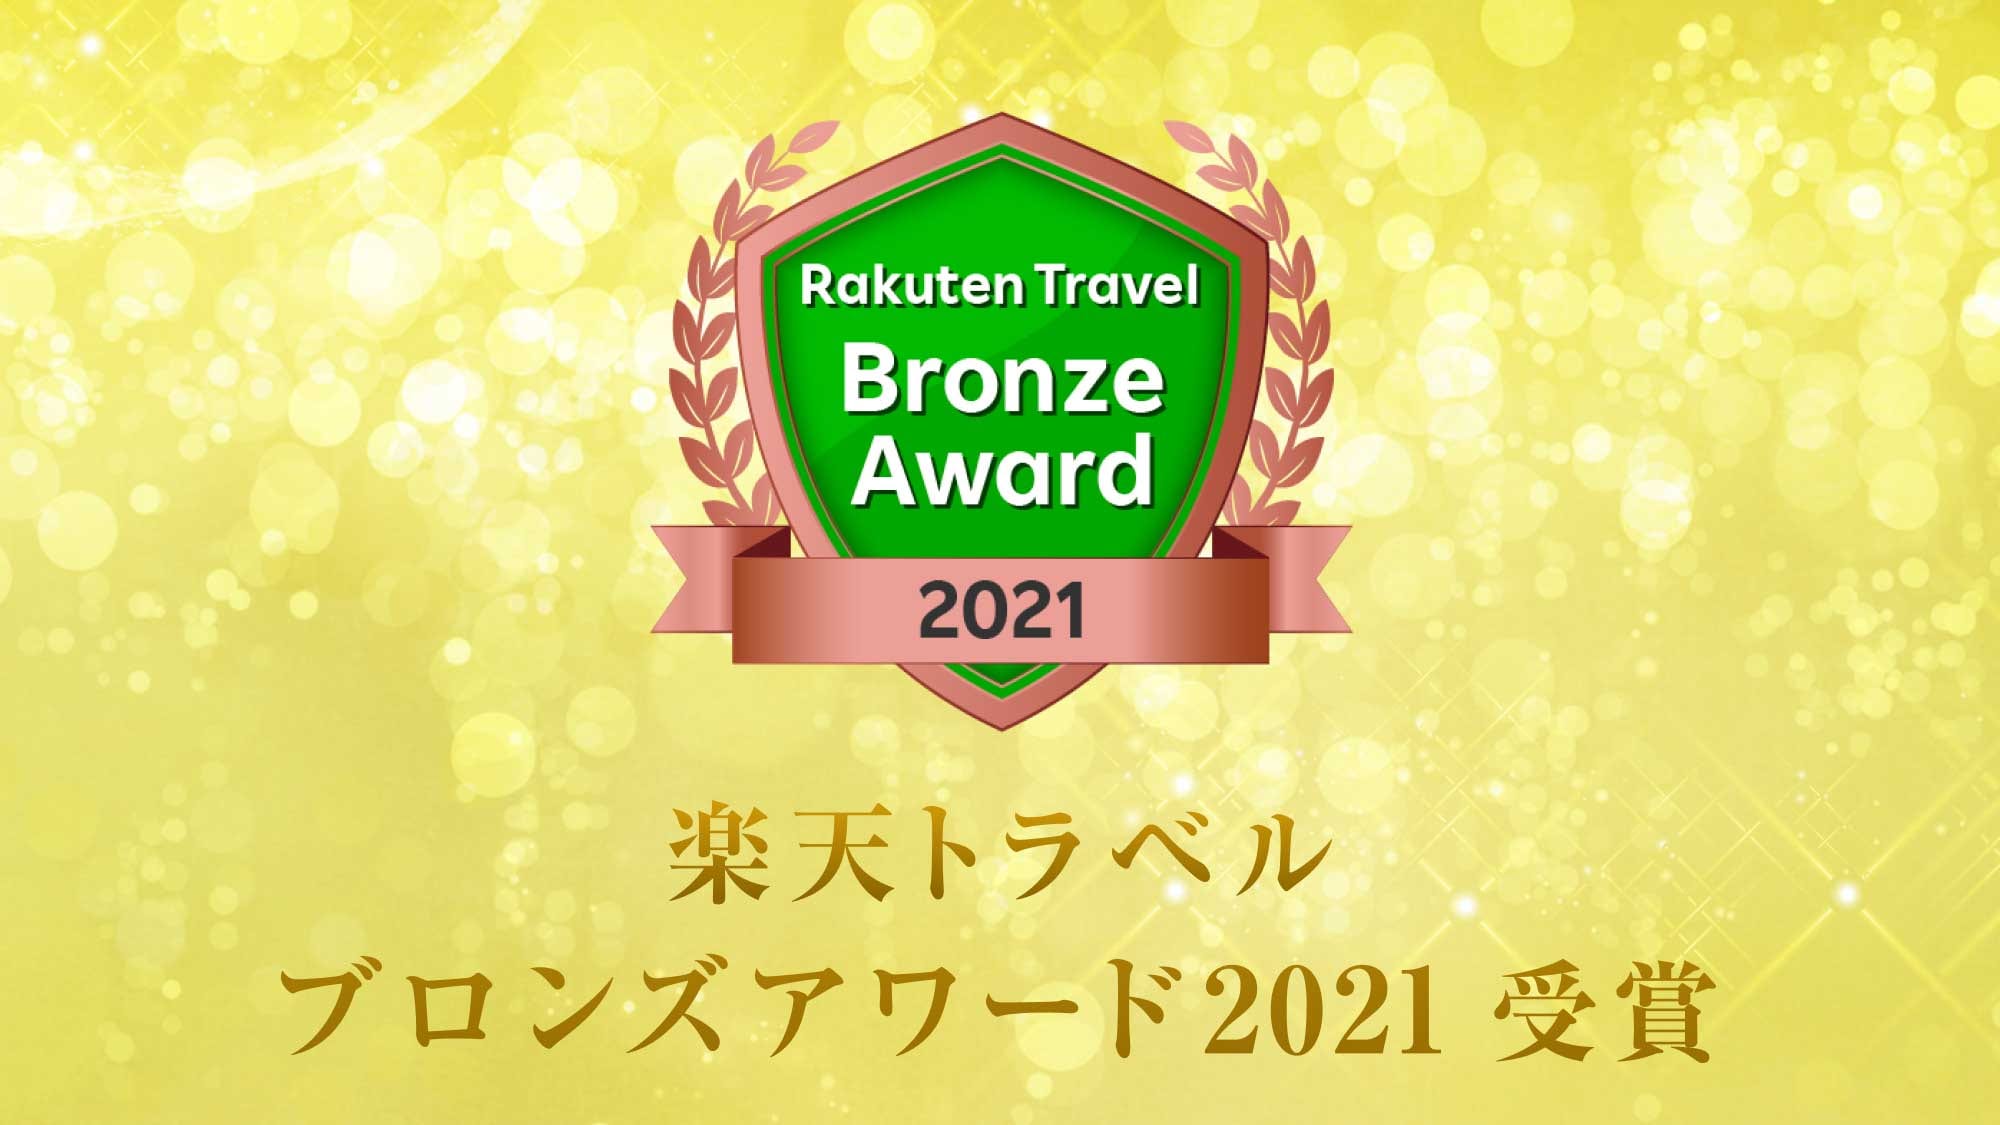 ได้รับรางวัล Rakuten Travel Bronze Award 2021! เรากำลังขายแผนที่ระลึกที่ยอดเยี่ยม♪